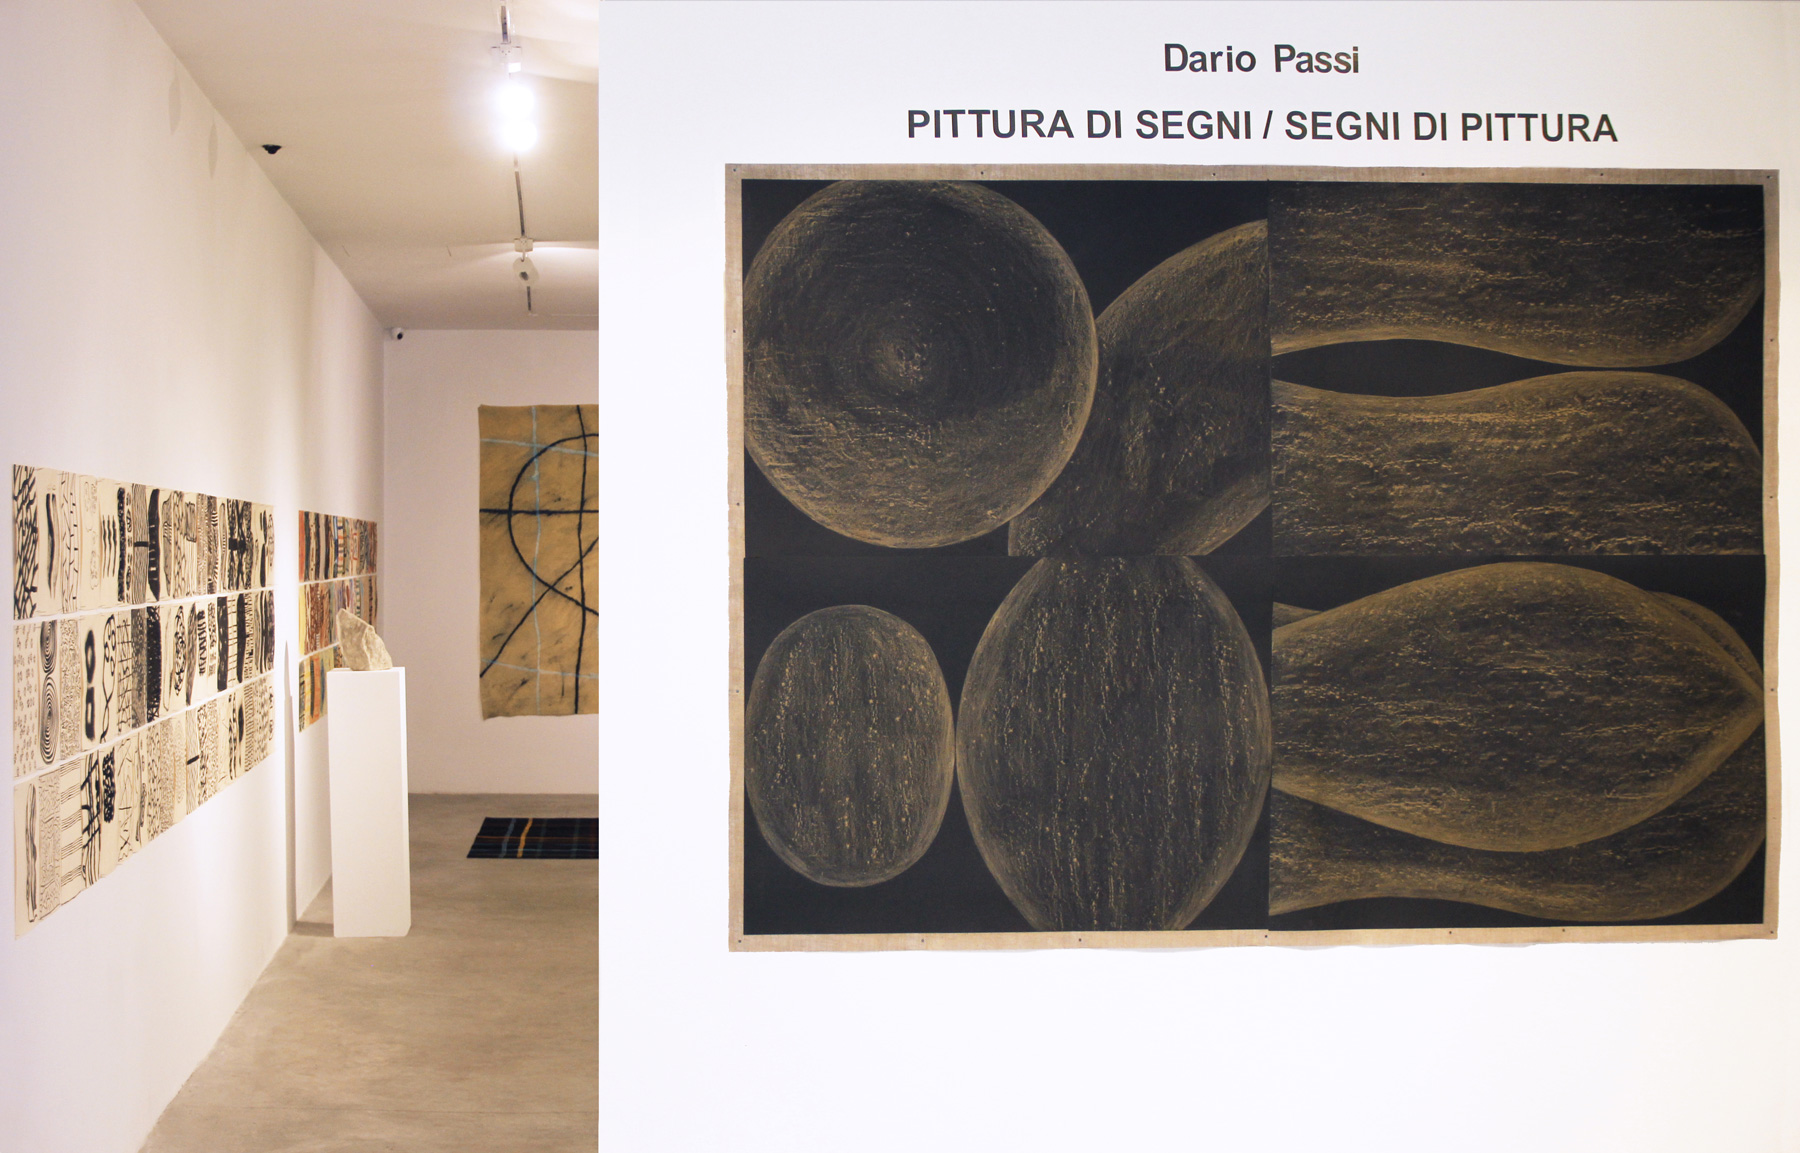 Mostra “Dario Passi: Pittura di Segni / Segni di Pittura” alla Nomas Foundation